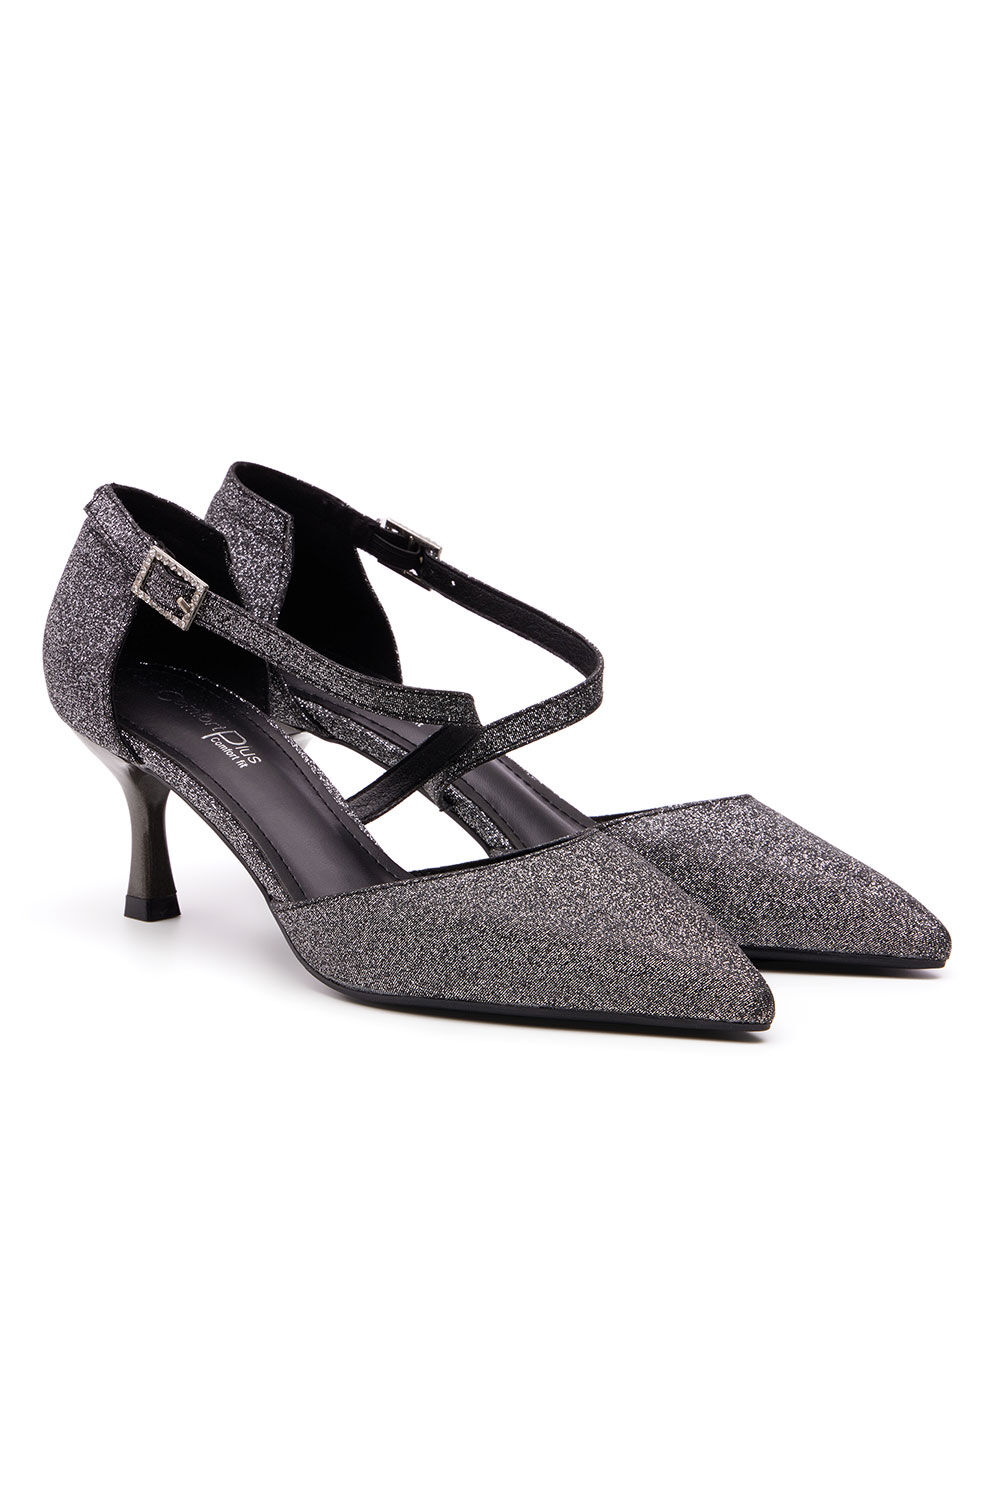 Nina | Shoes | Womans Black Shiny Glitter Heels Peek A Bootoenina Ny Low  Heels | Poshmark